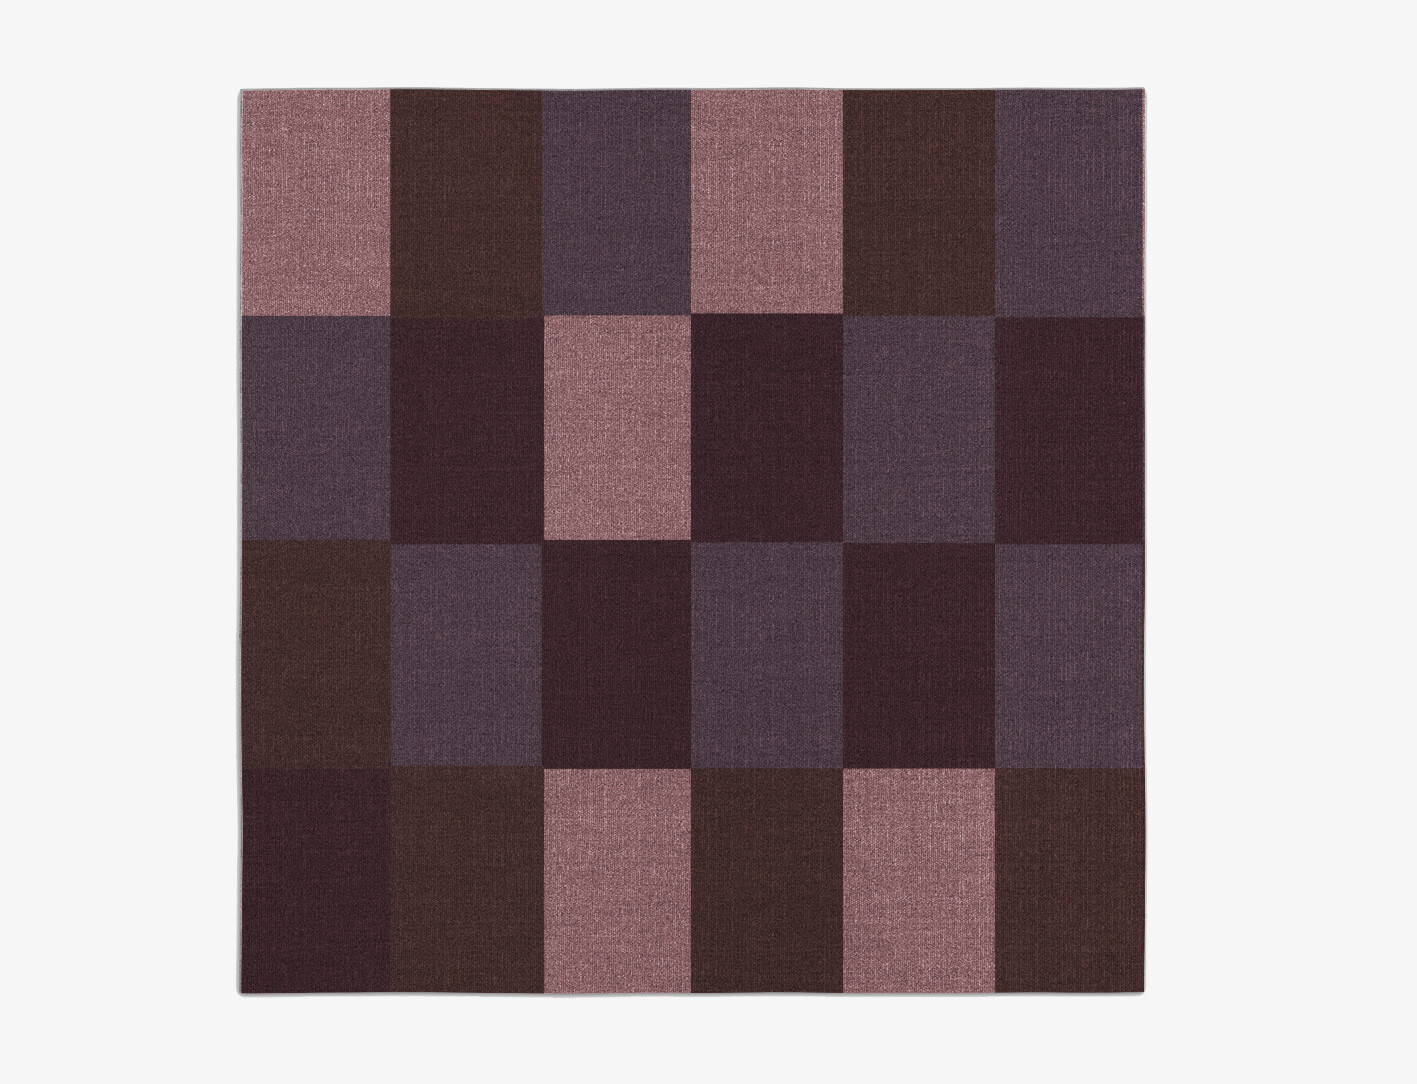 Violet Geometric Square Flatweave New Zealand Wool Custom Rug by Rug Artisan